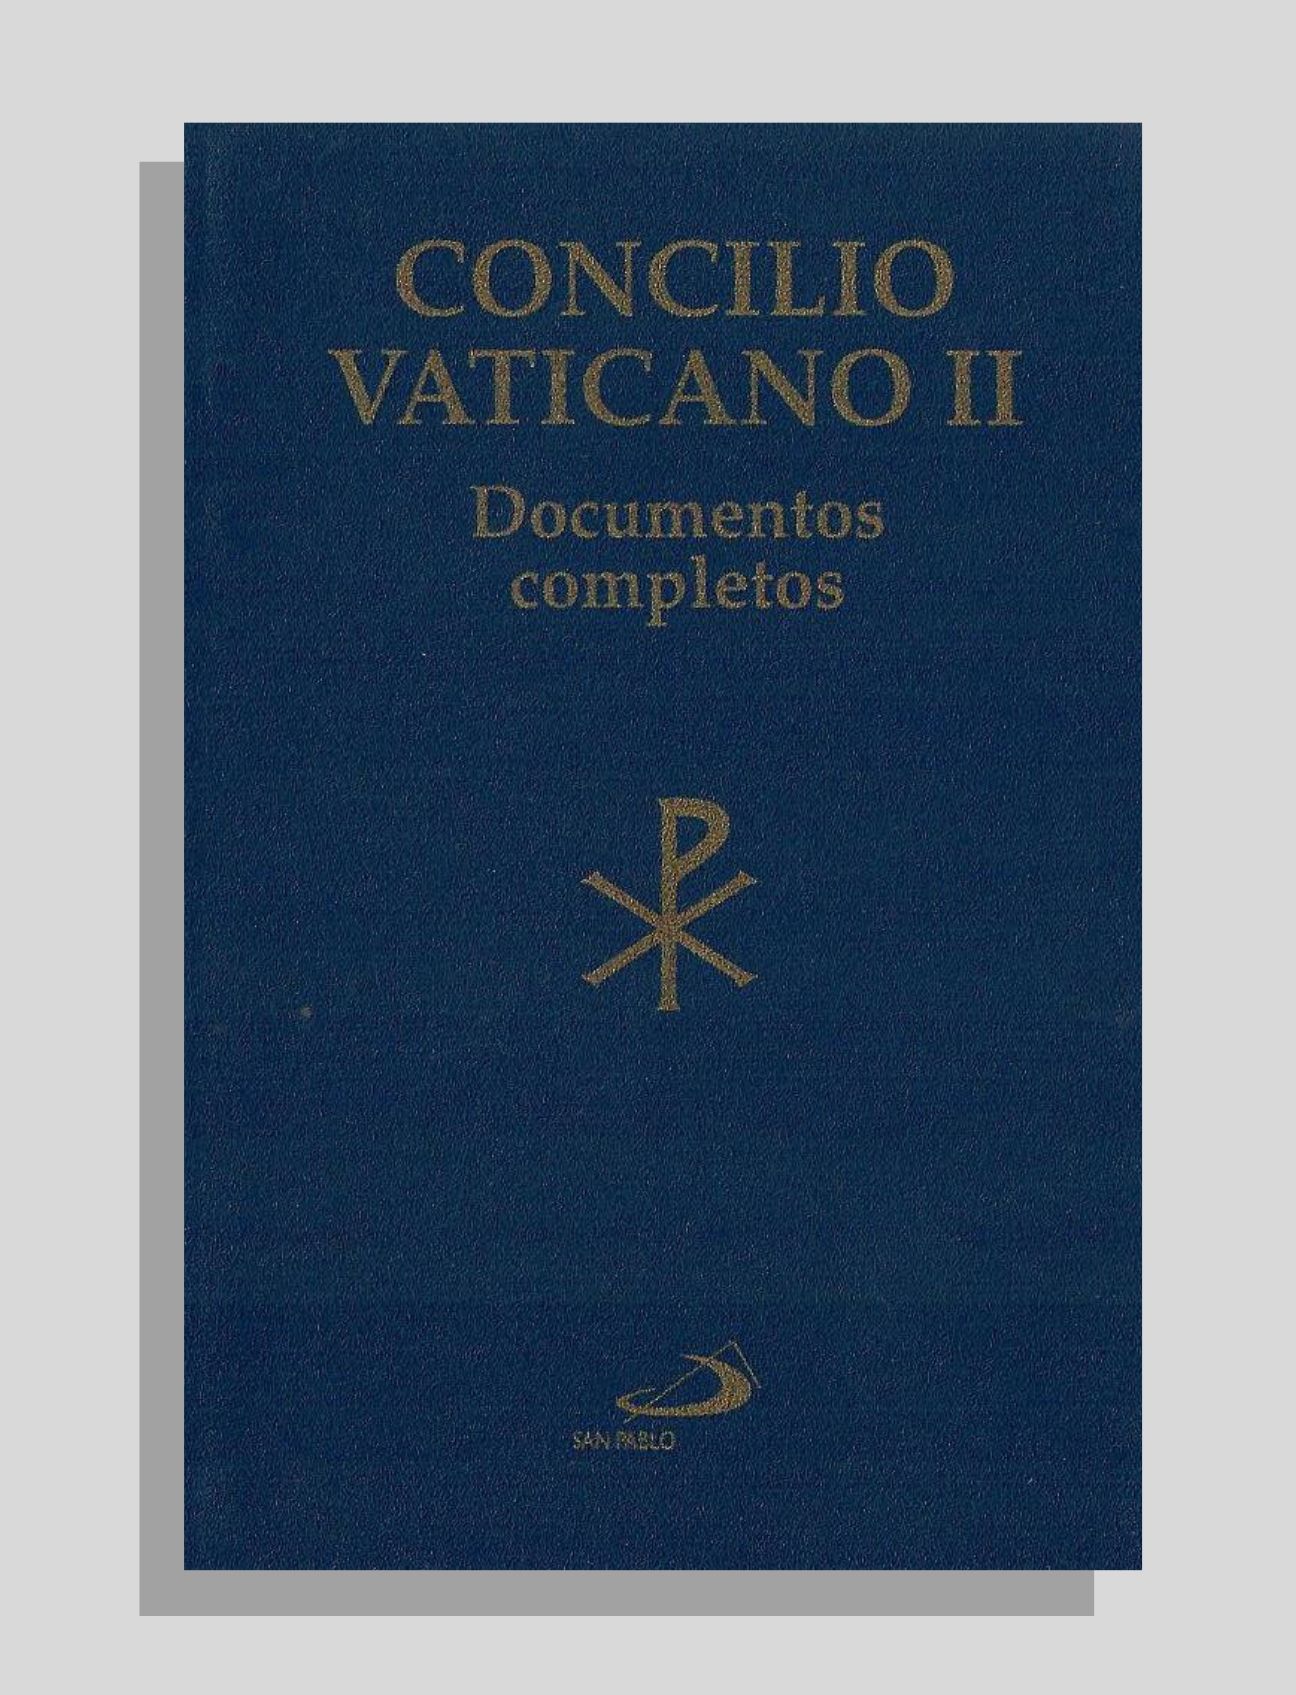 CONCILIO VATICANO II